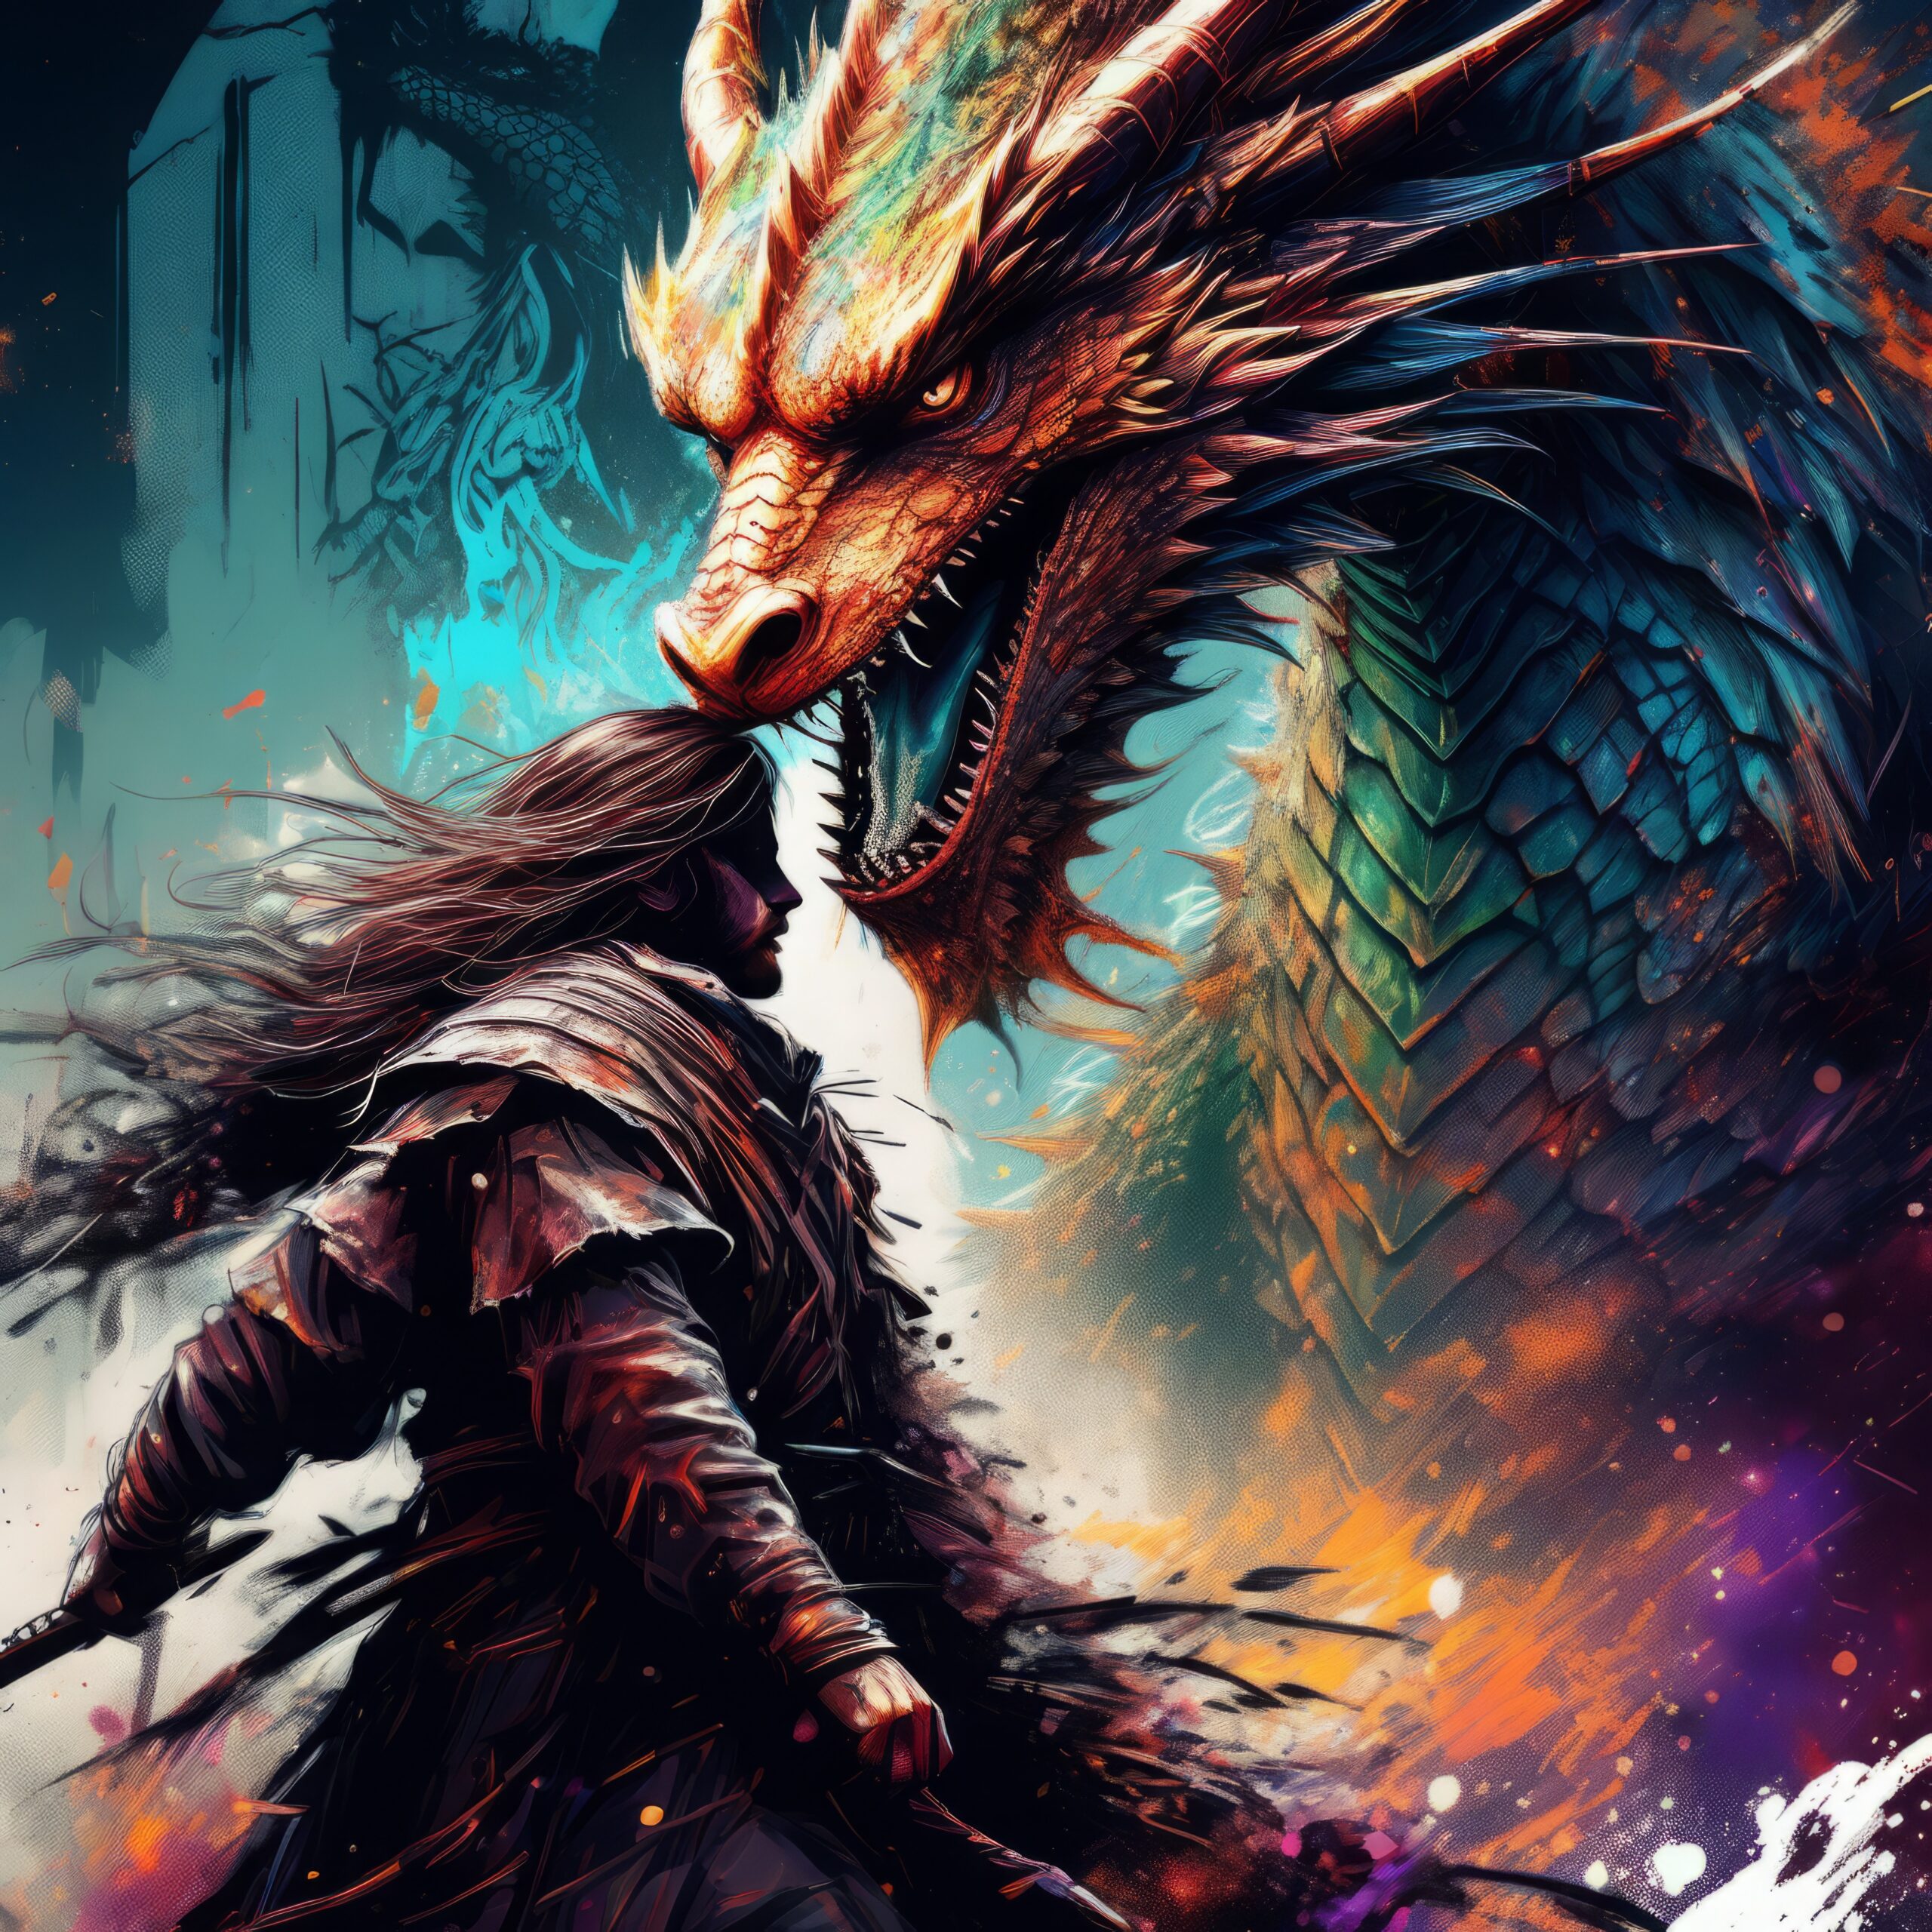 巨大ドラゴンとナイトの闘い＆ファンタジーとRPGの無料リアルイラスト素材